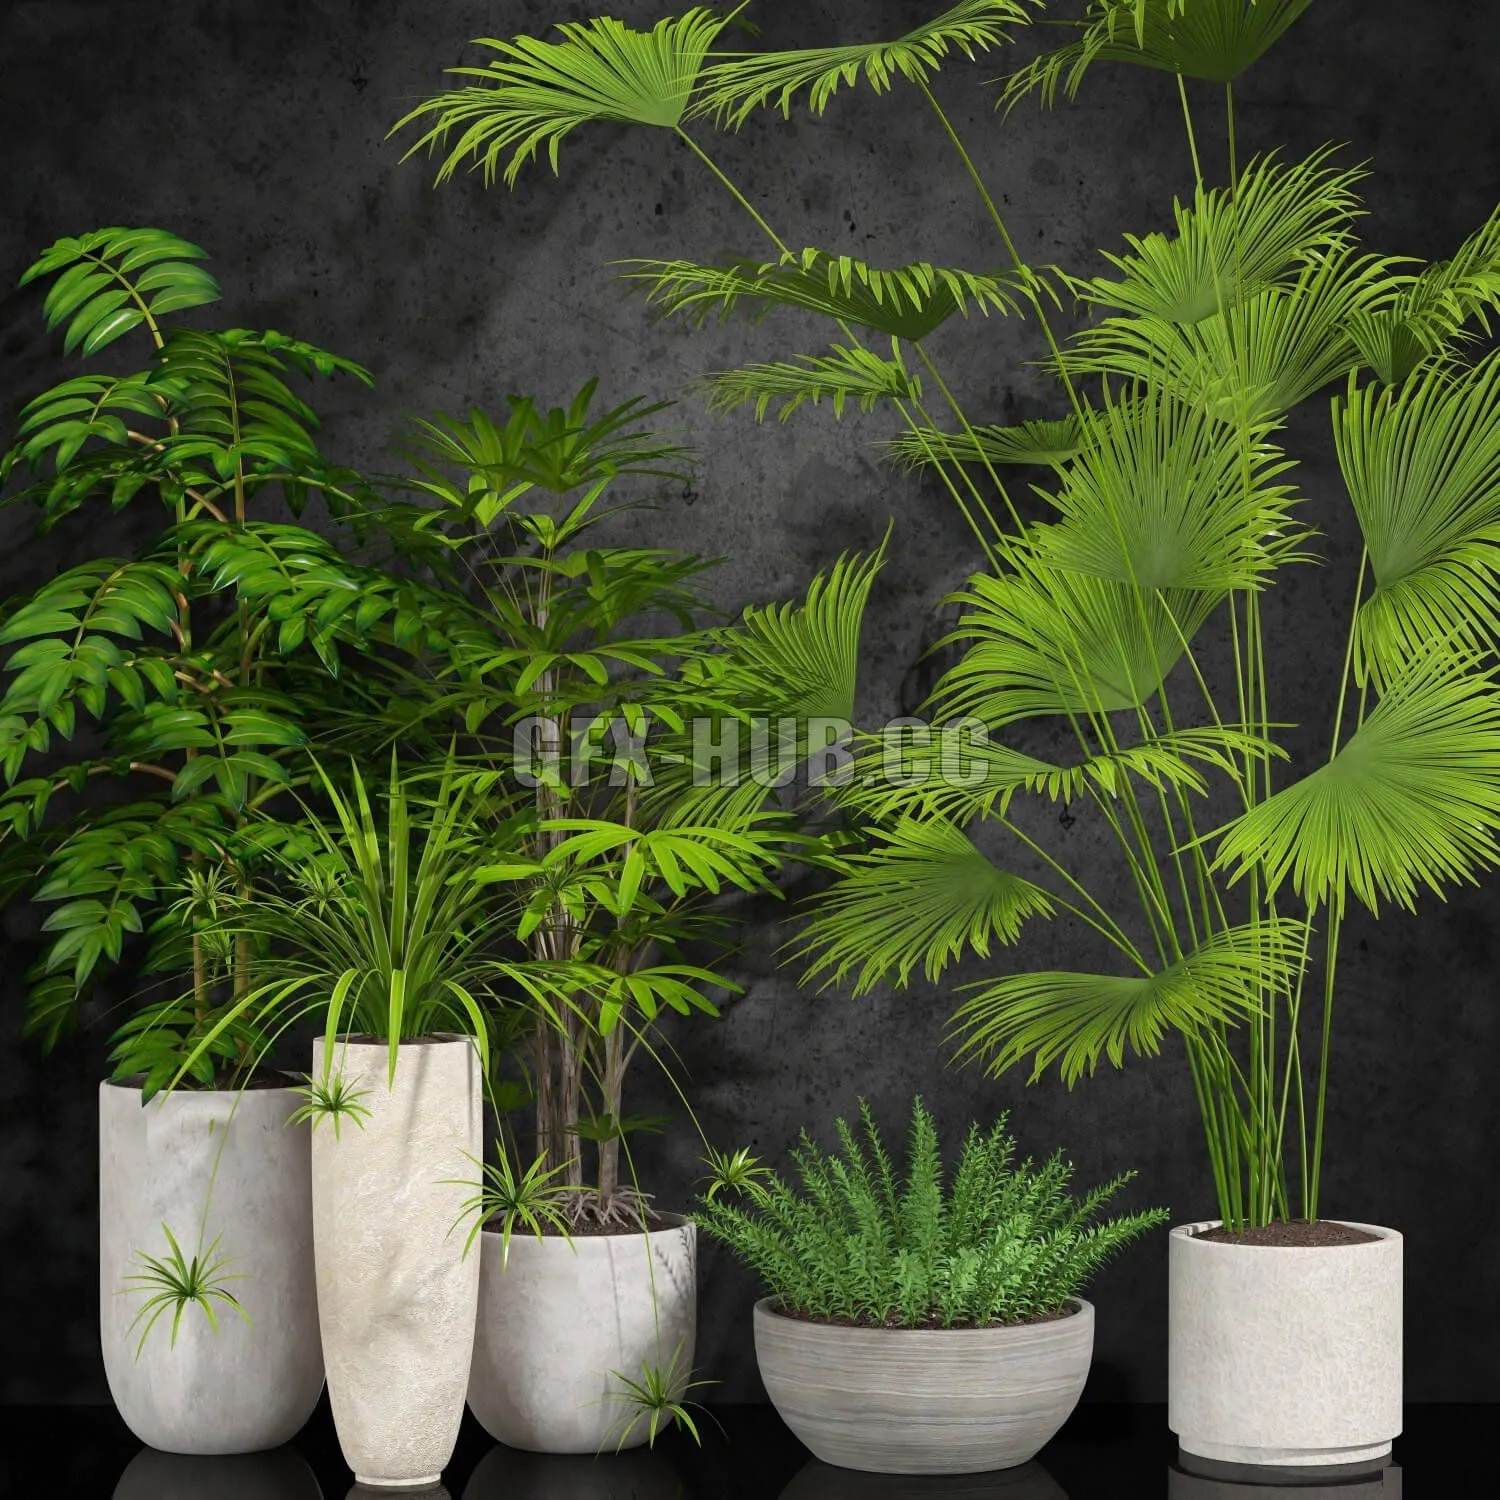 PLANT – Houseplant 056